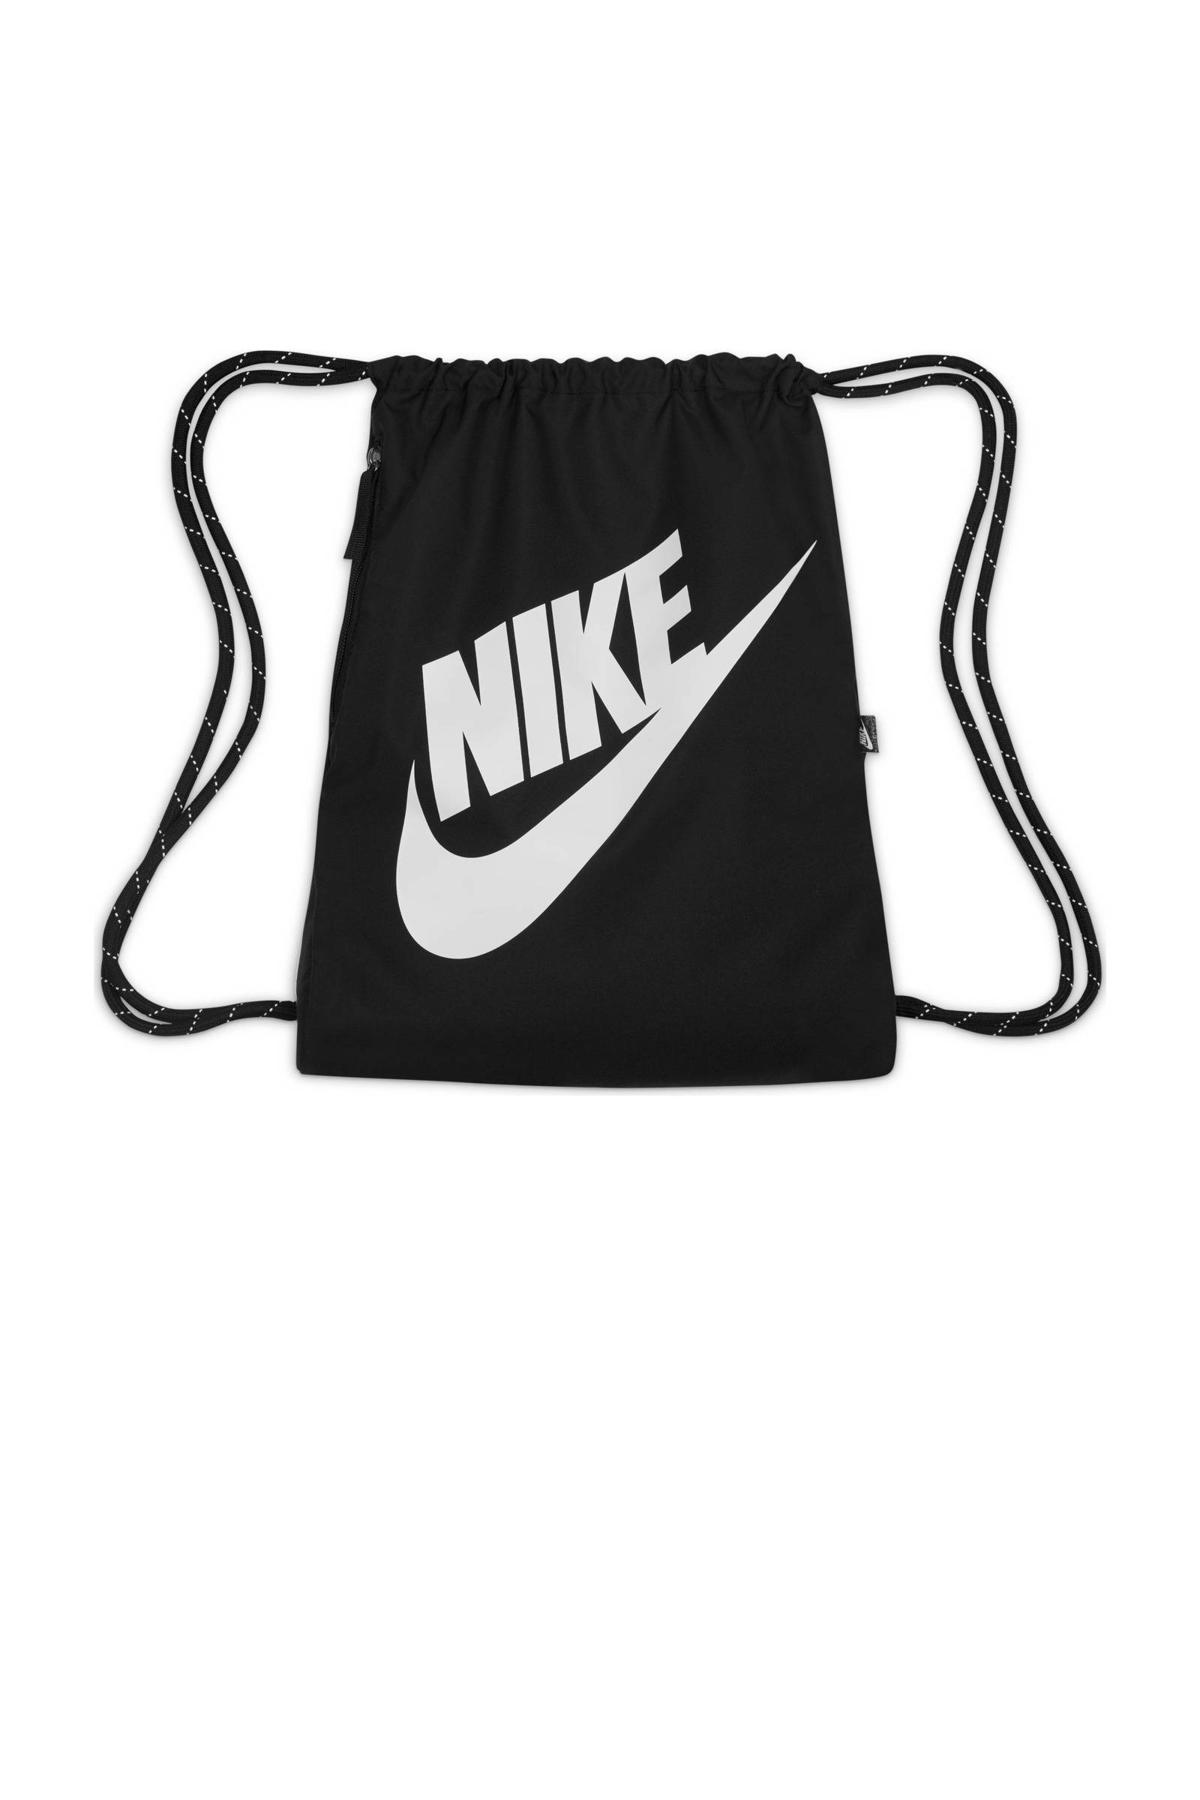 passend wenkbrauw excelleren Nike sporttas 13L zwart/wit | wehkamp